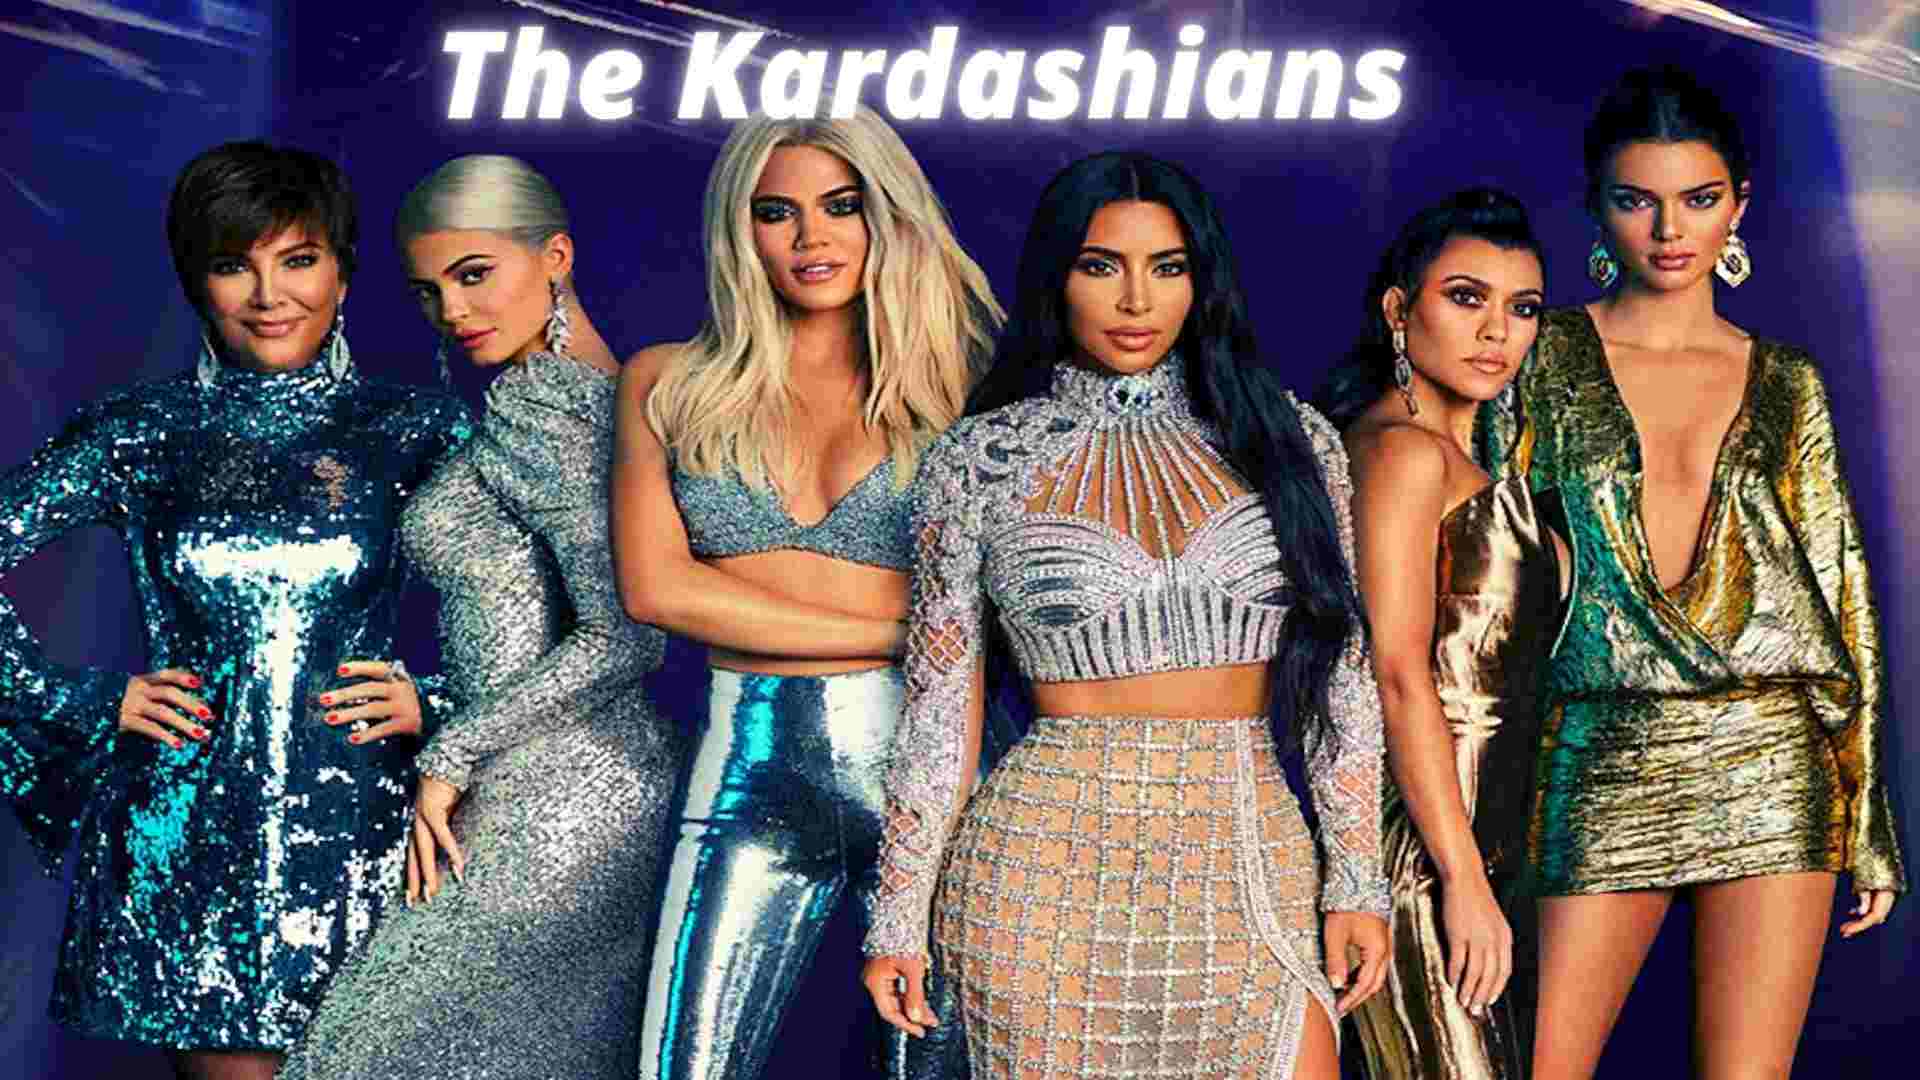 The Kardashians start on Hulu